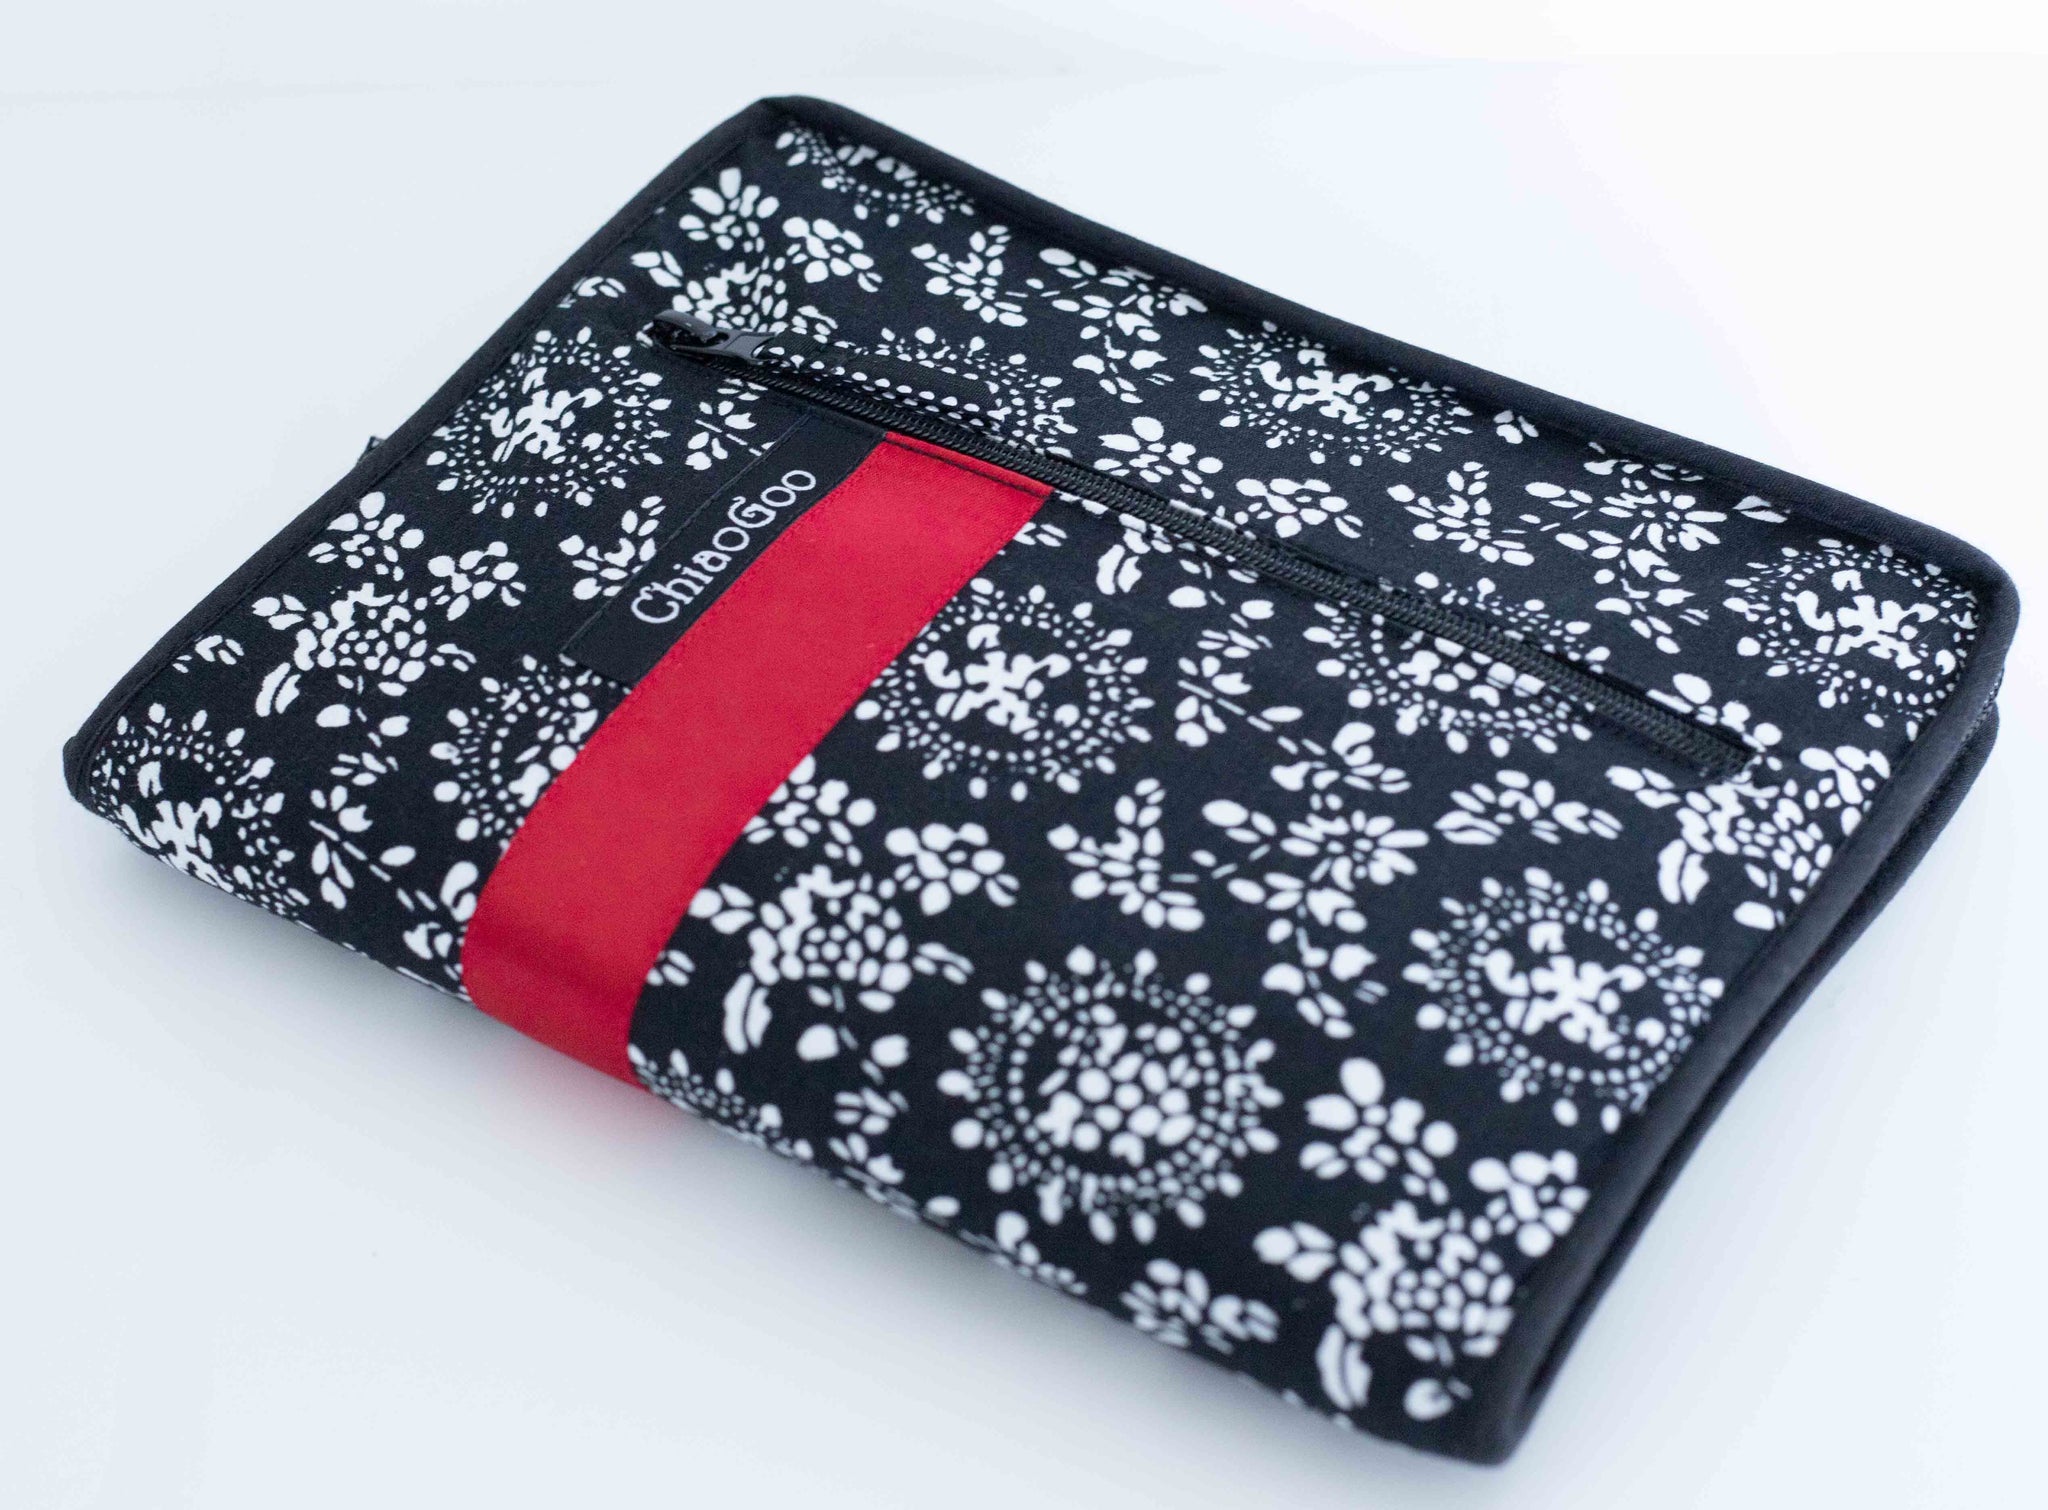 ChiaoGoo TWIST Red Lace Mini Sets – Maker+Stitch